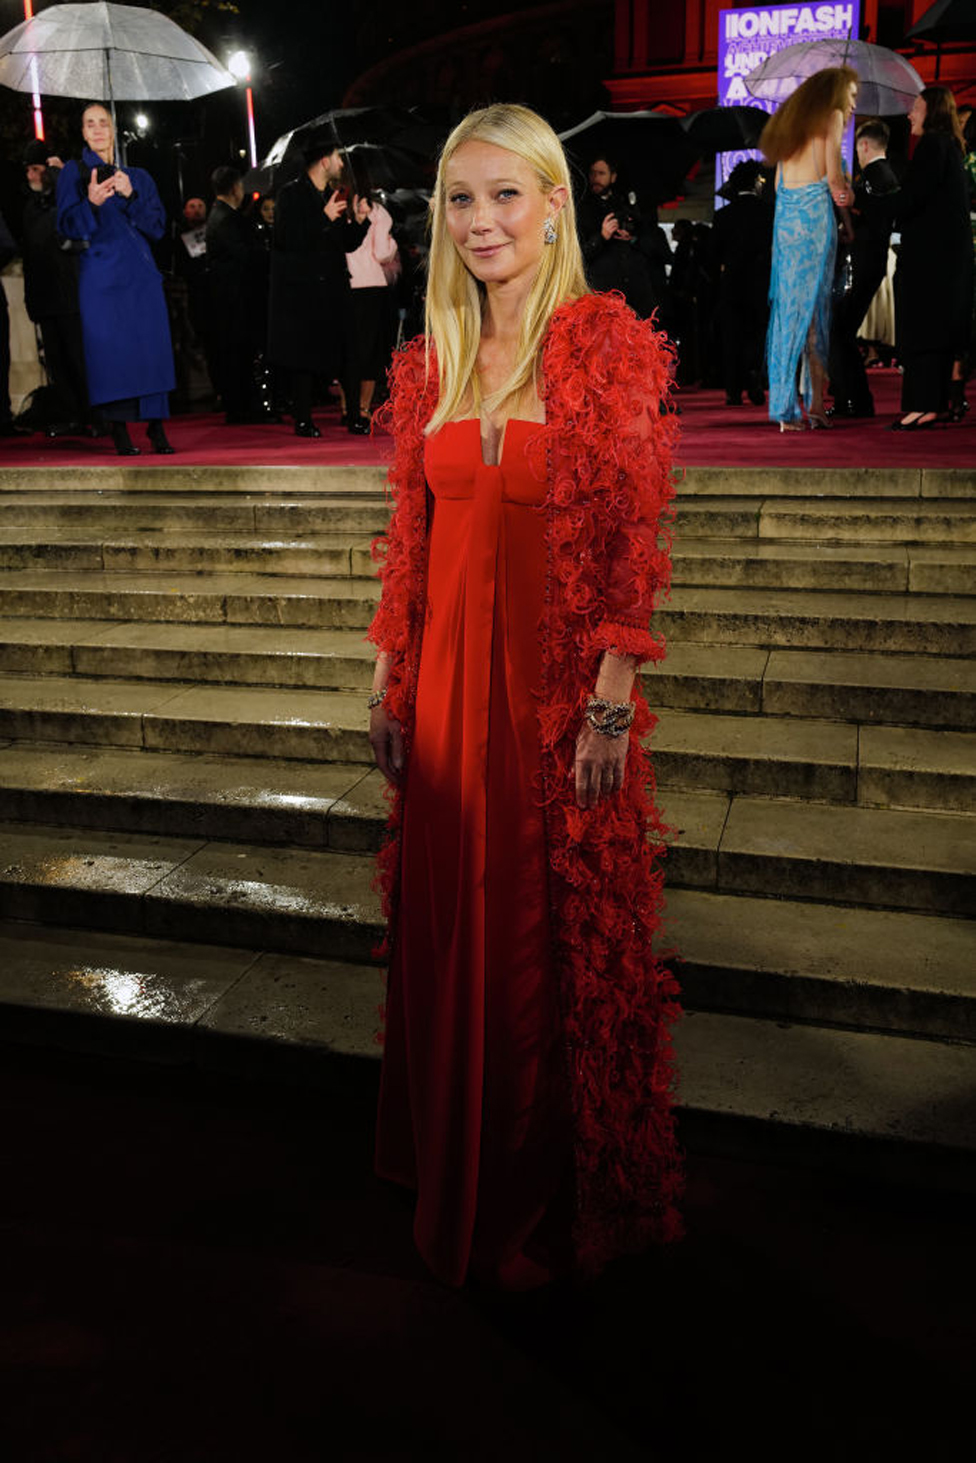 Paltrou je nosila vintidž haljinu kreatora Valentina, koji je uveo novu boju u svet mode, takozvanu &Valentino crvenu&/WireImage/Getty Images